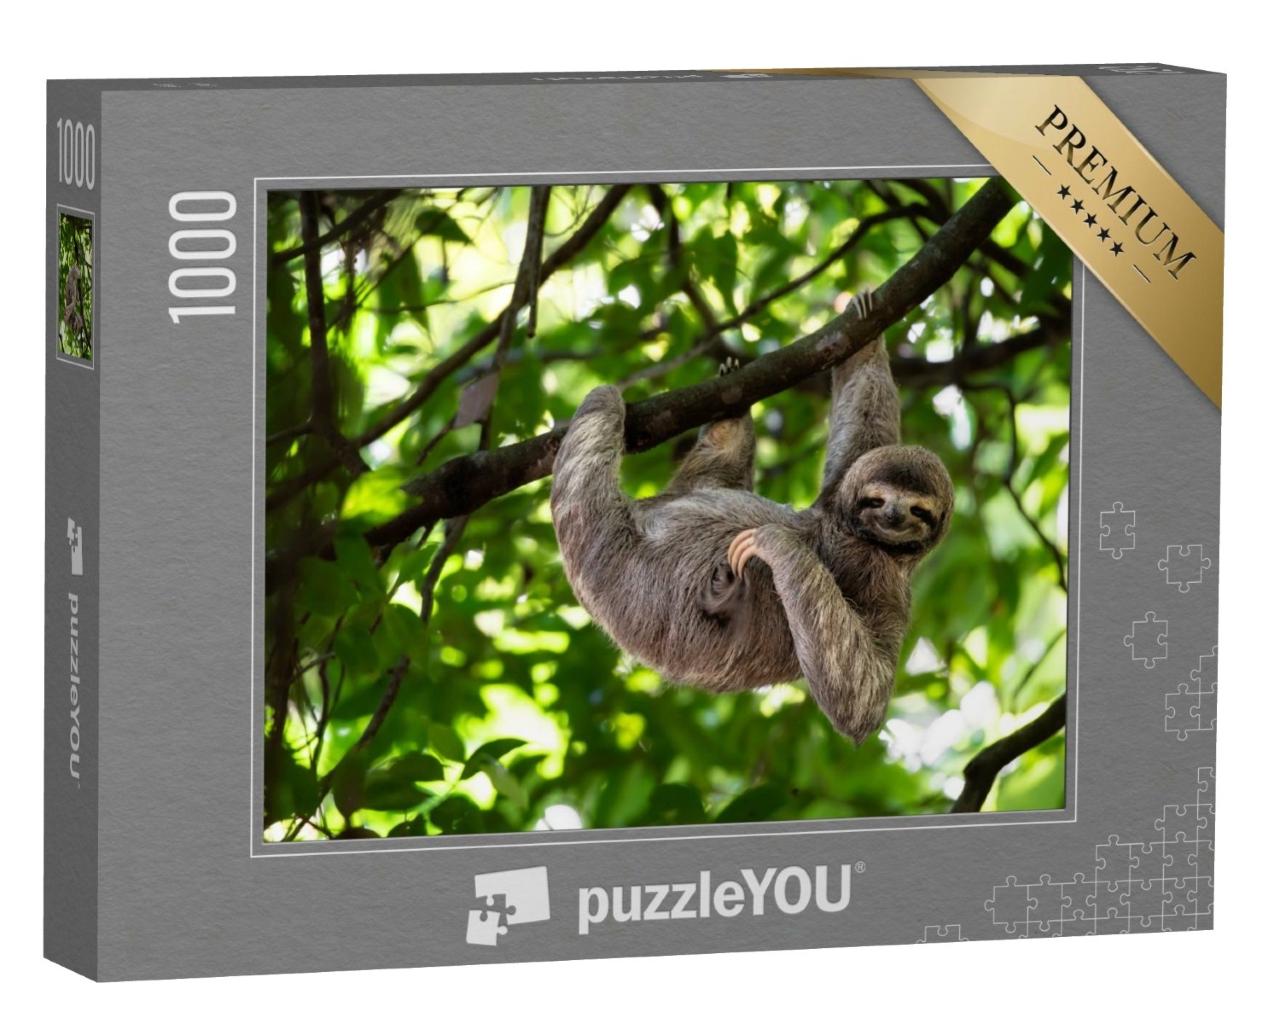 Puzzle de 1000 pièces « Adorable paresseux dans une pose parfaite sur un arbre »